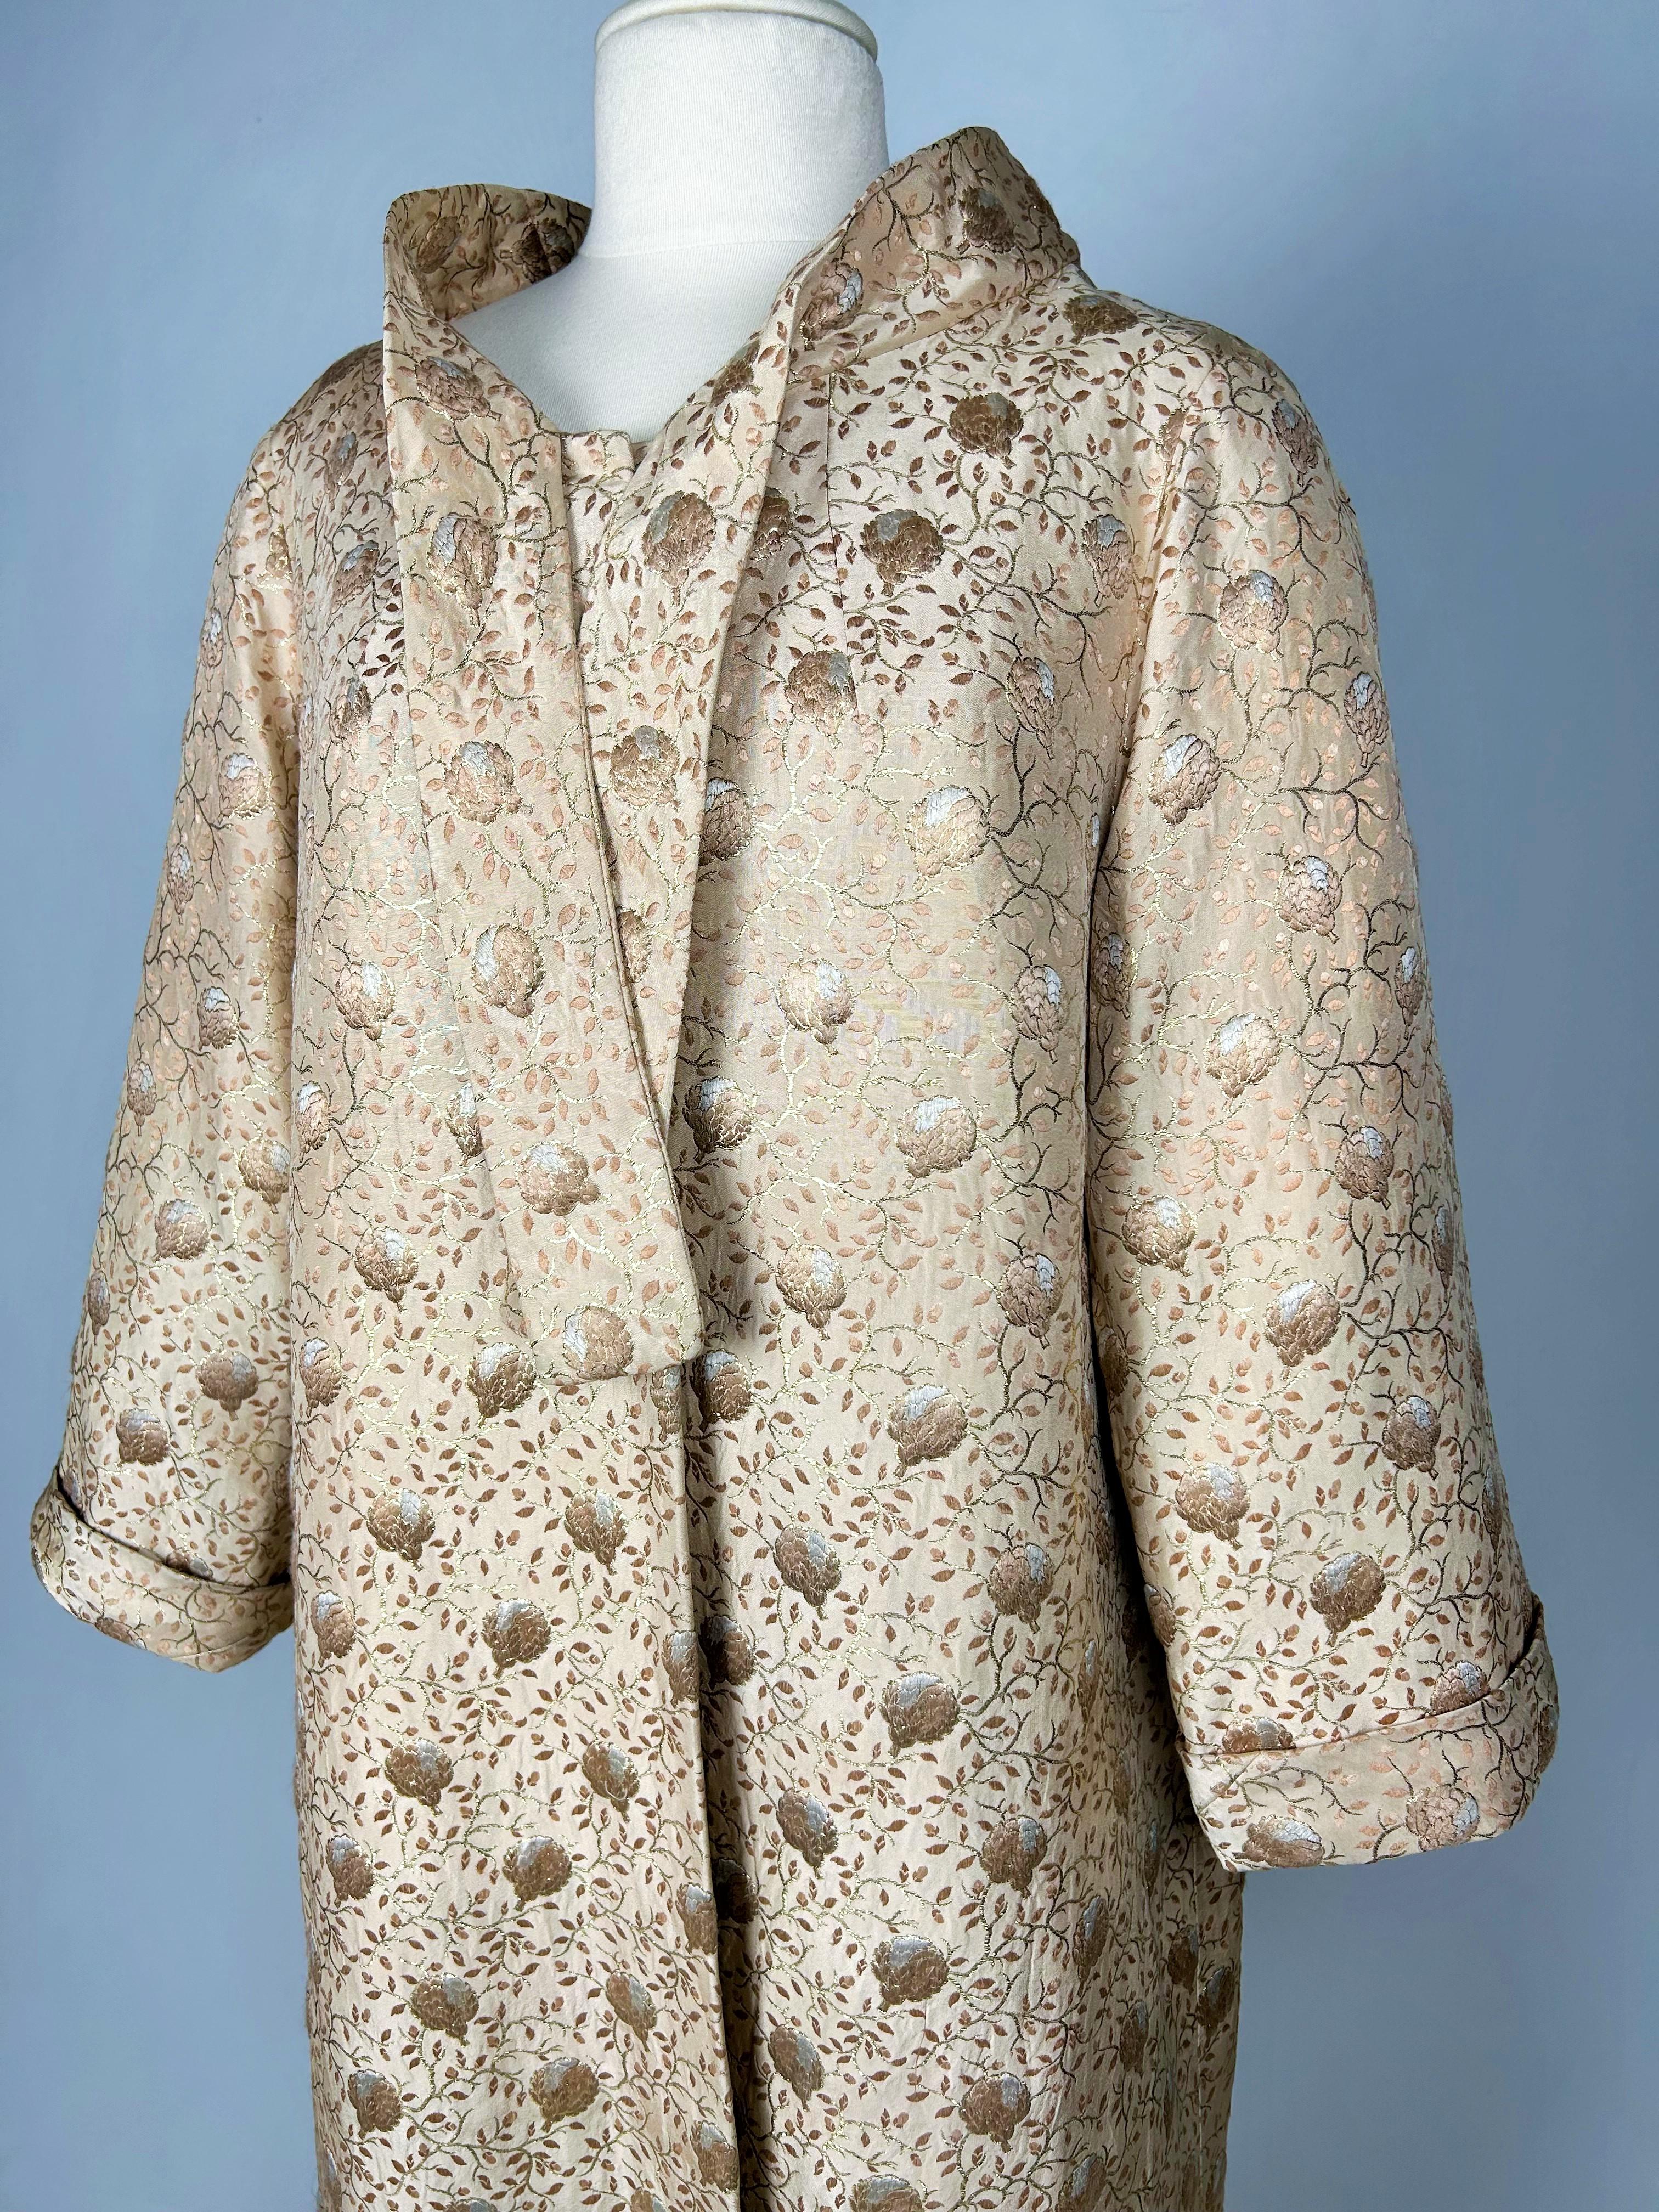 Gold lamé Brocade Evening Coat by Jean Dessès Haute Couture Circa 1955-1960 For Sale 13